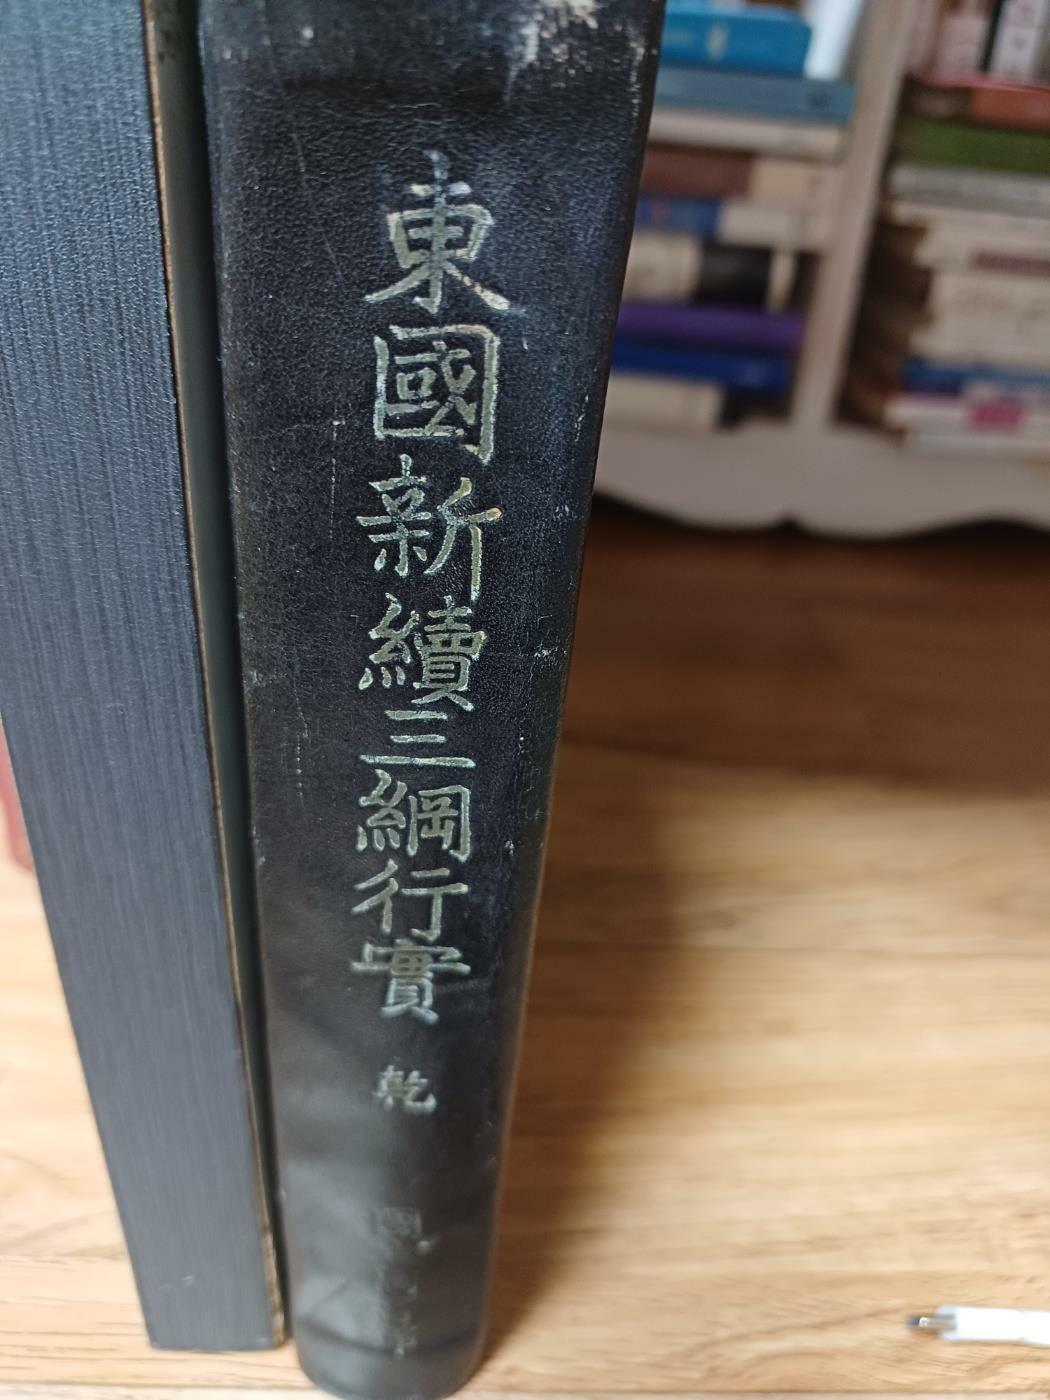 [중고] 동국신속삼강행실 청구총서 국립도서관 1958년 발행. 영인본